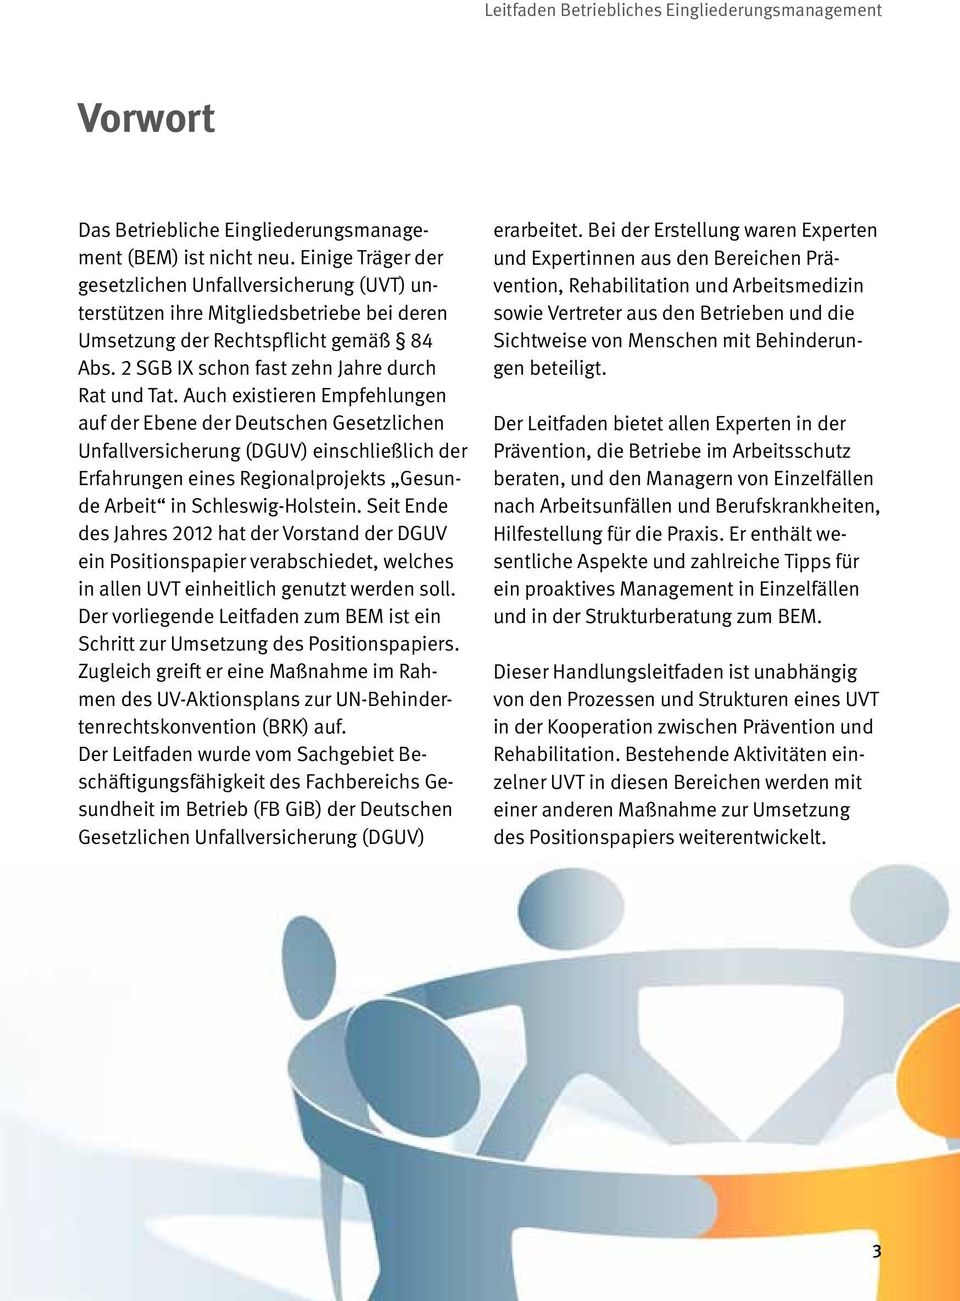 Auch existieren Empfehlungen auf der Ebene der Deutschen Gesetzlichen Unfallversicherung (DGUV) einschließlich der Erfahrungen eines Regionalprojekts Gesunde Arbeit in Schleswig-Holstein.